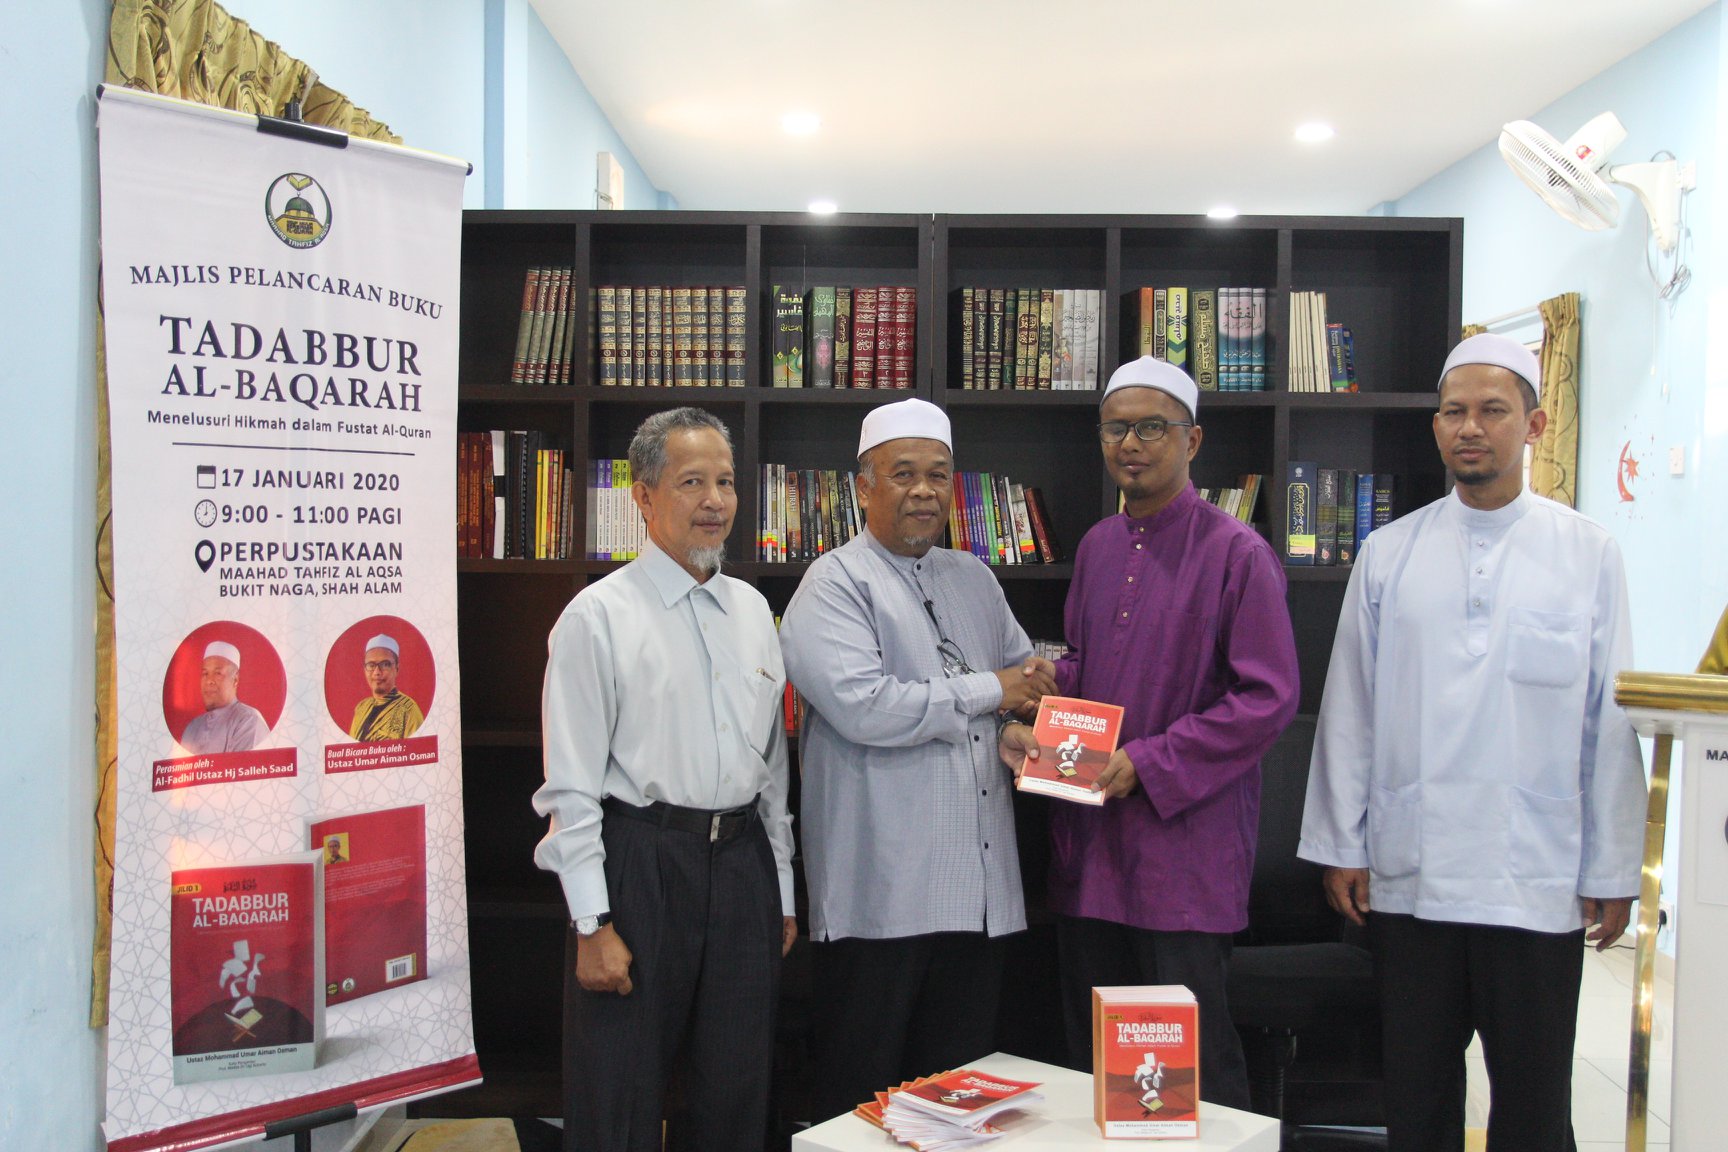 Majlis Pelancaran Buku Tadabbur Al-Baqarah